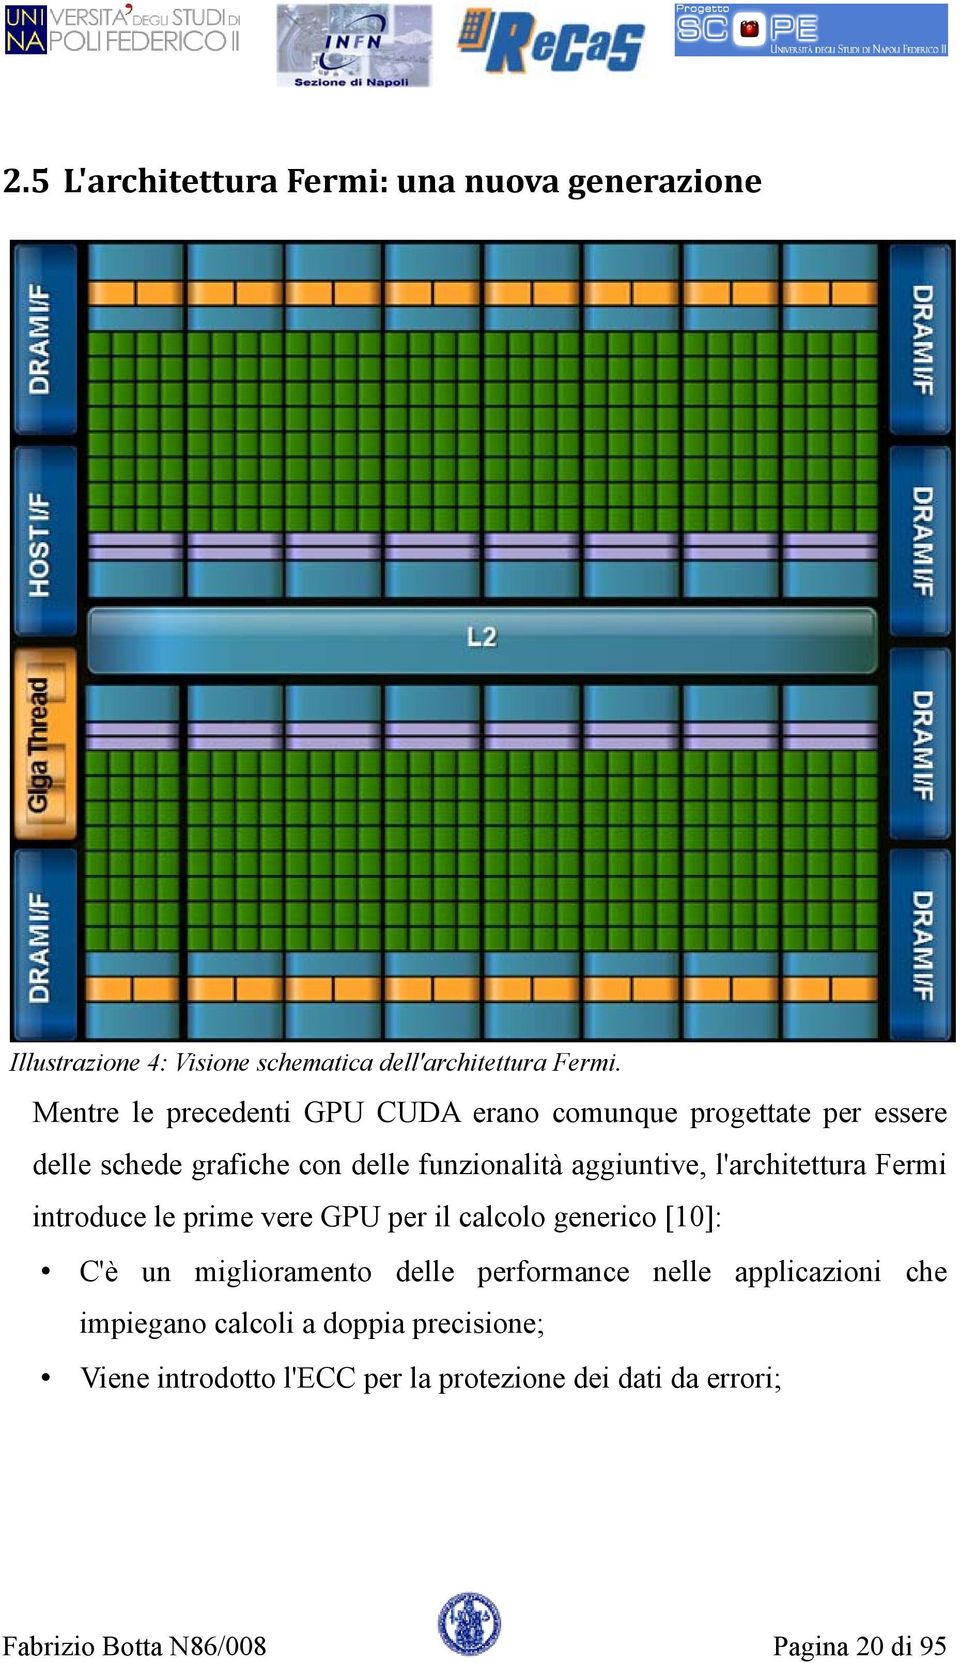 l'architettura Fermi introduce le prime vere GPU per il calcolo generico [10]: C'è un miglioramento delle performance nelle